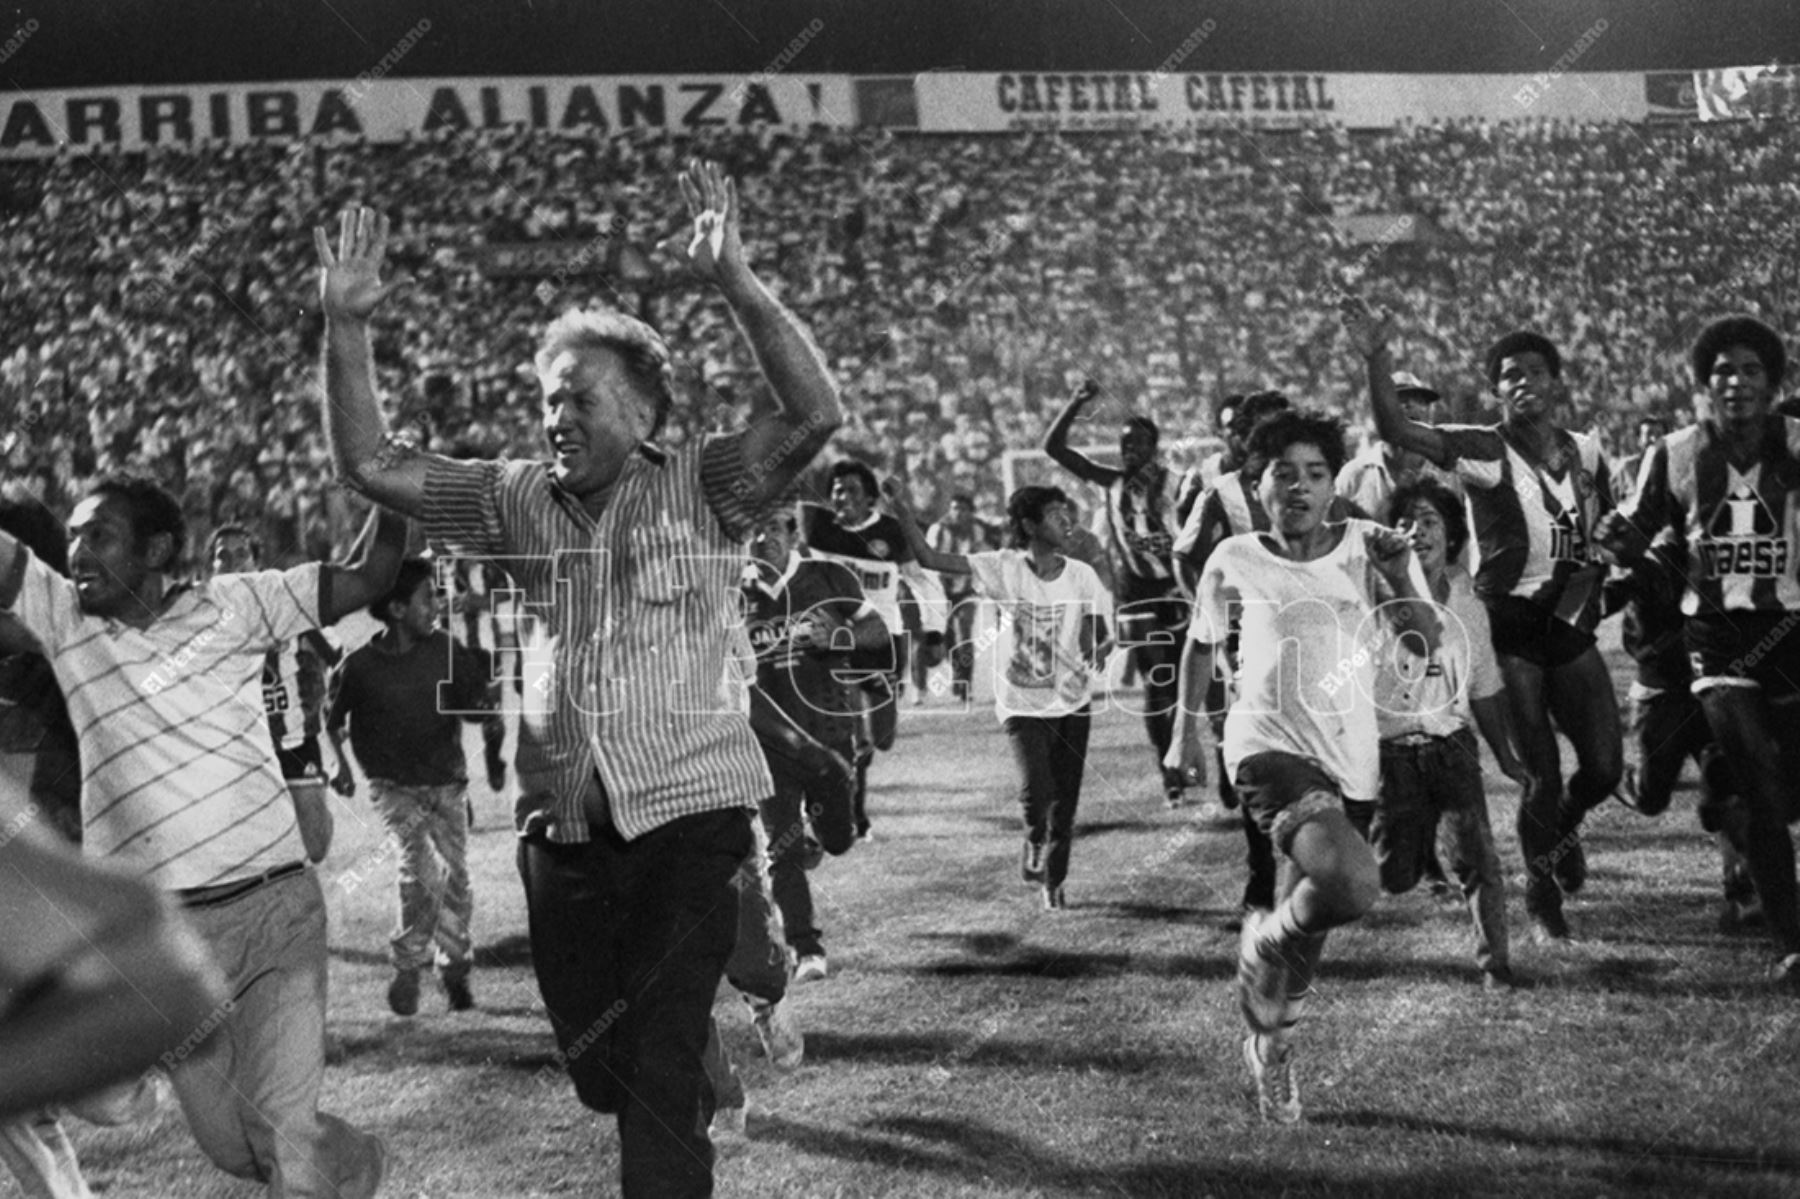 Lima - 8 febrero 1990  / Unión Huaral se impuso 1-0 a Sporting Cristal y se coronó campeón del fútbol peruano 1989. El técnico Simo Vilic celebra la segunda estrella del equipo huaralino. Foto: Archivo Histórico de El Peruano / Pedro Arroyo